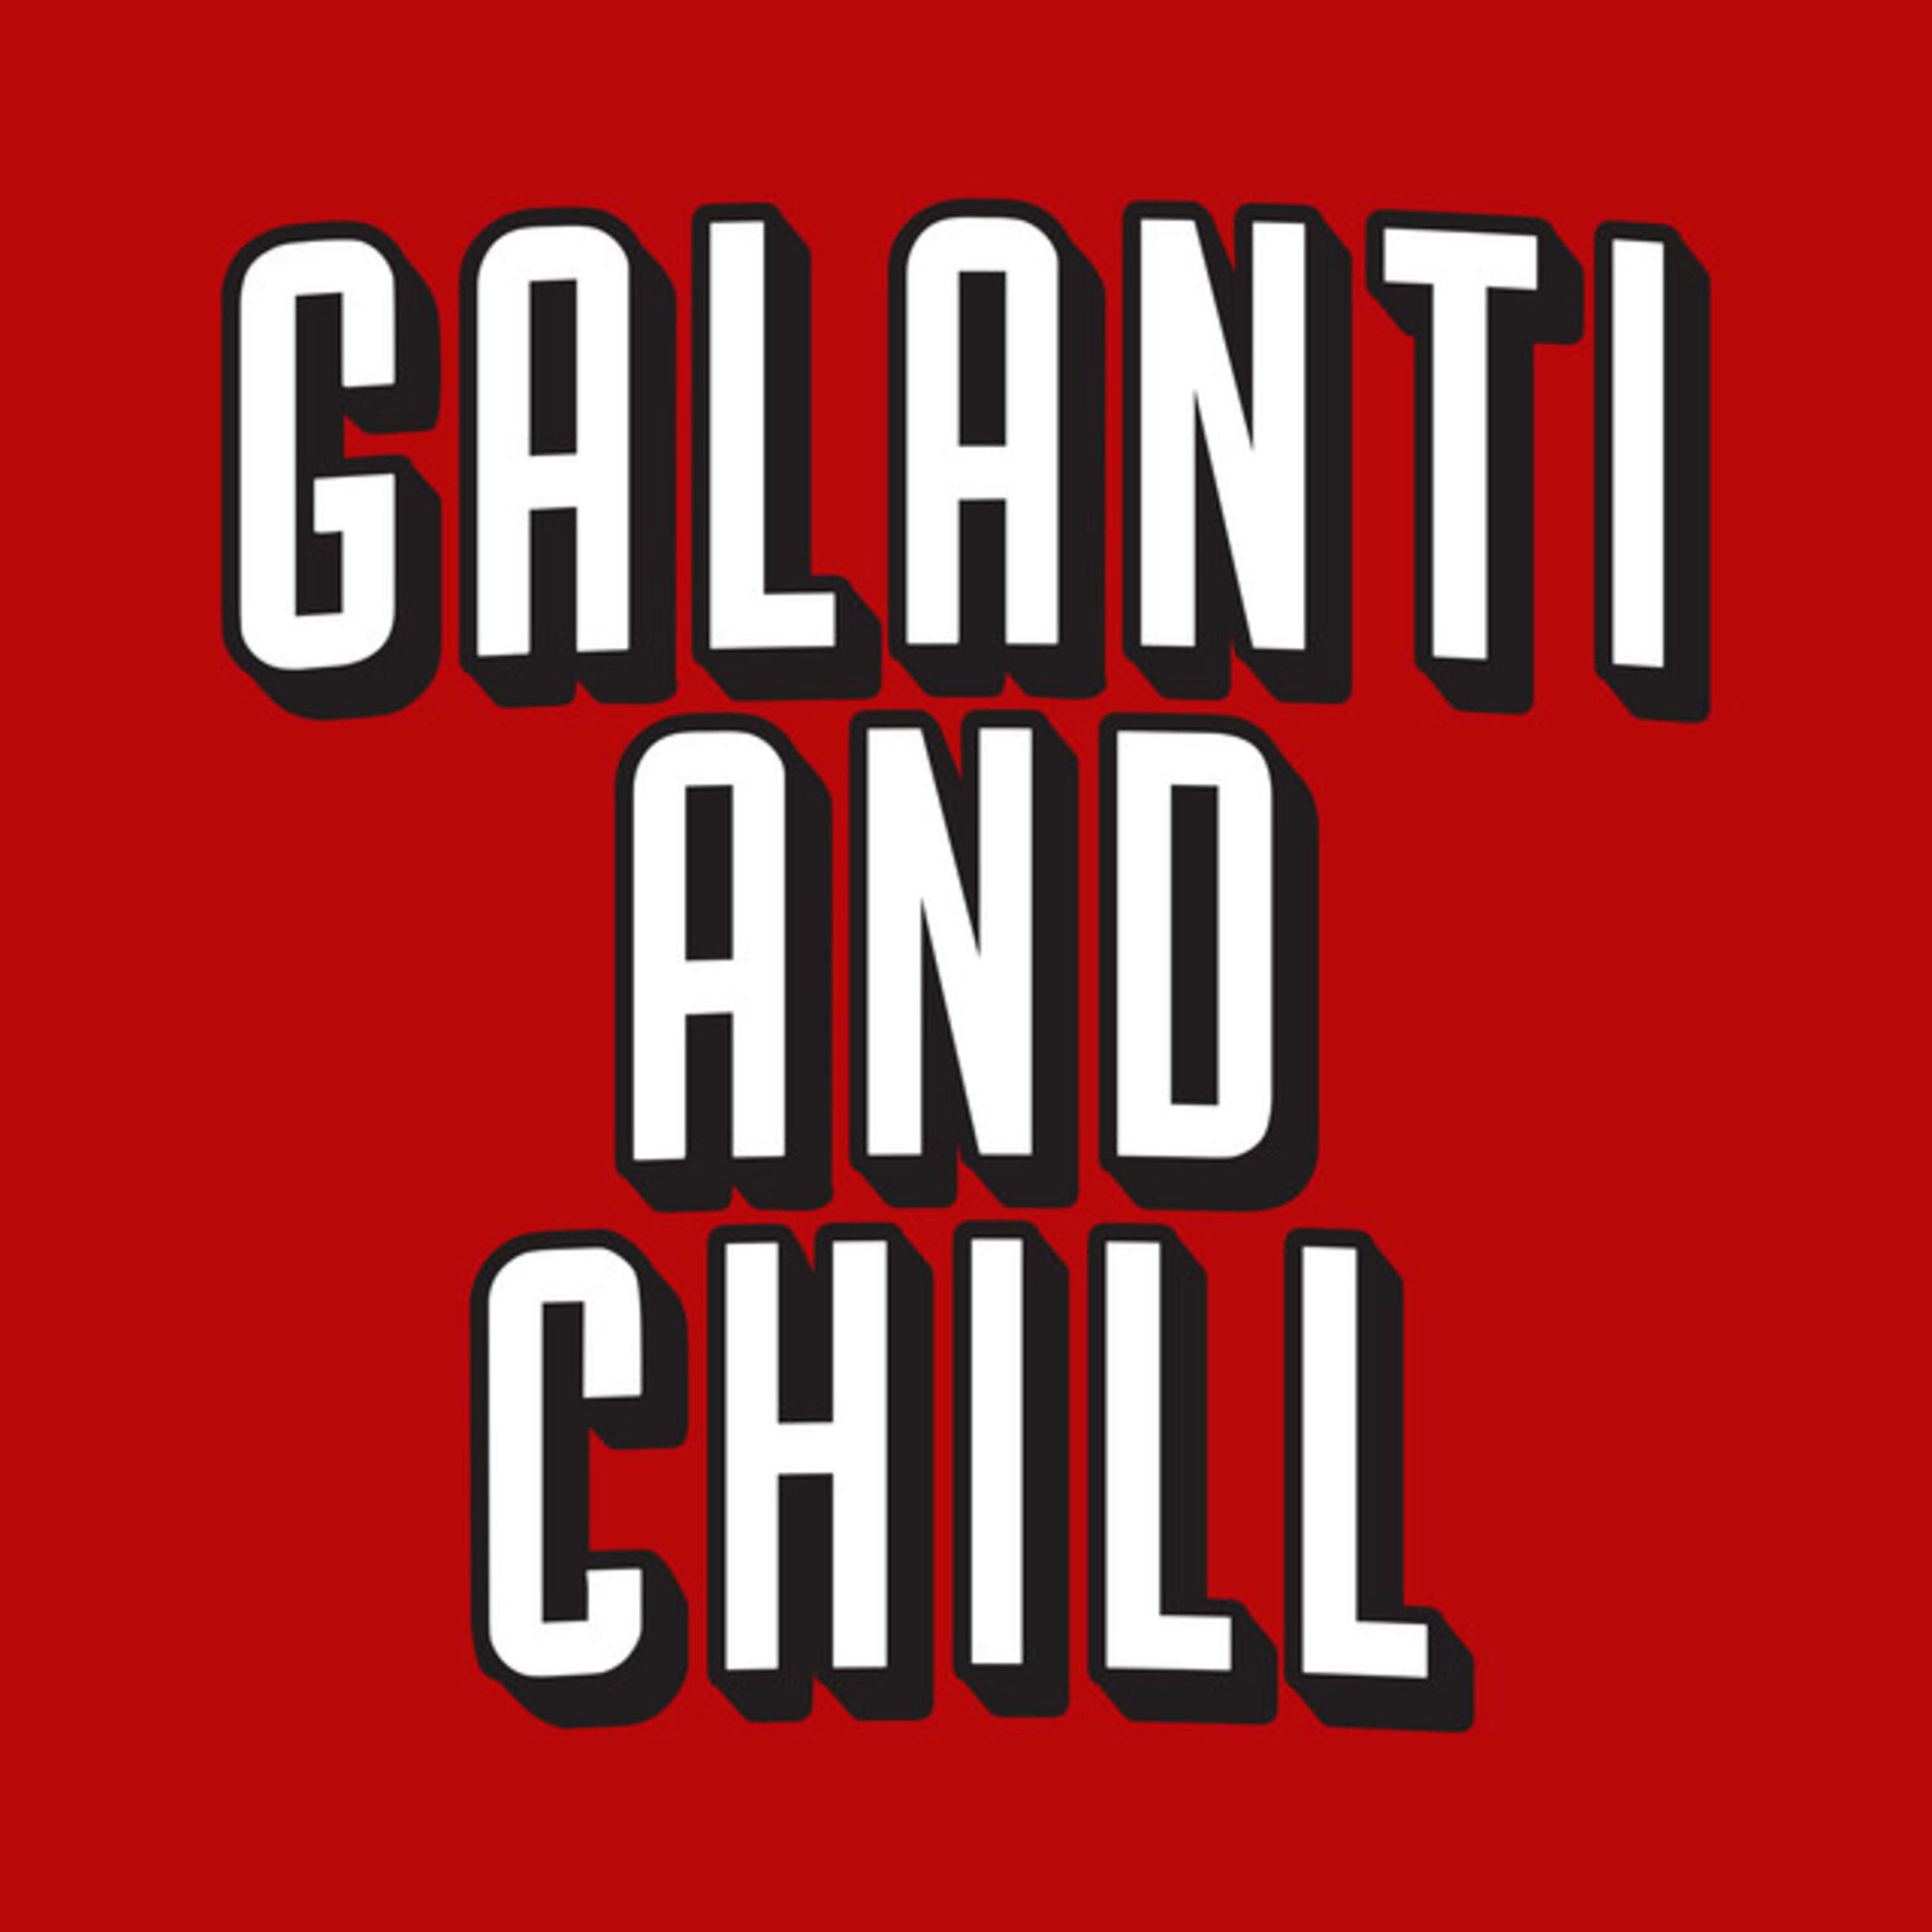 Galanti & Chill - Hellraiser Films